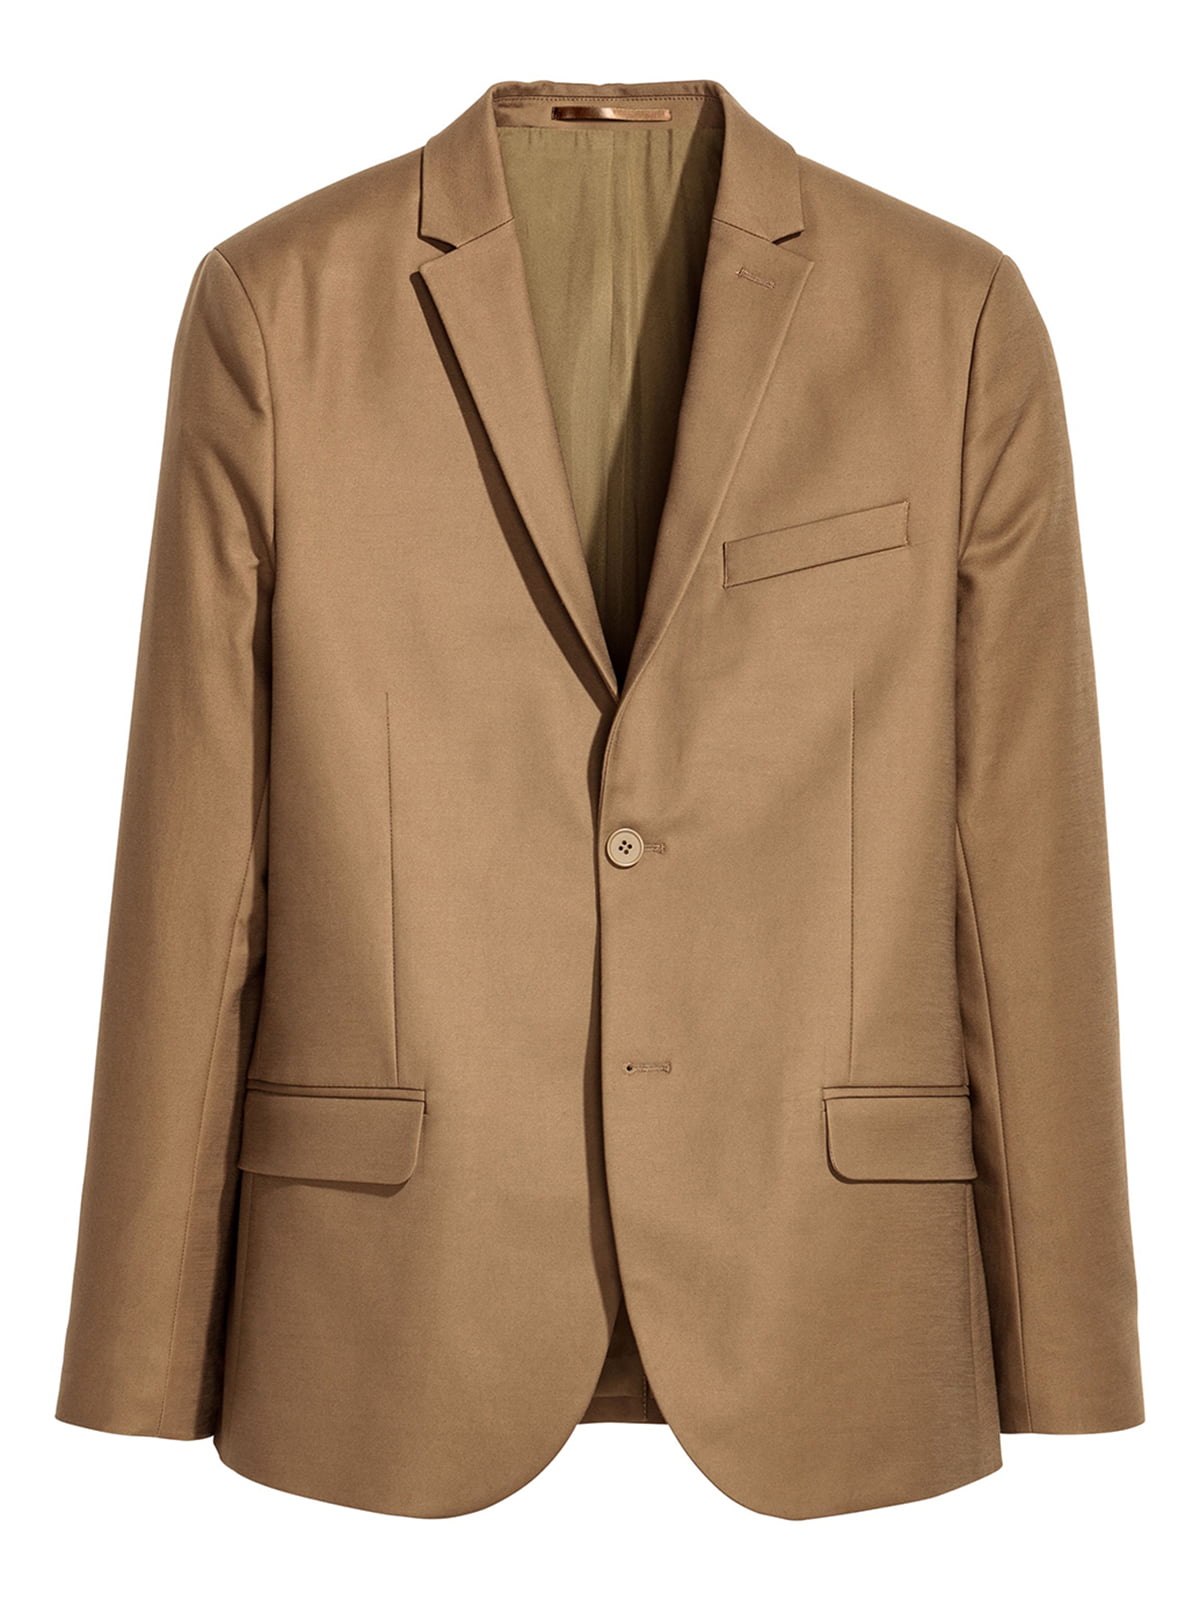 Піджак коричневого кольору | 5662600